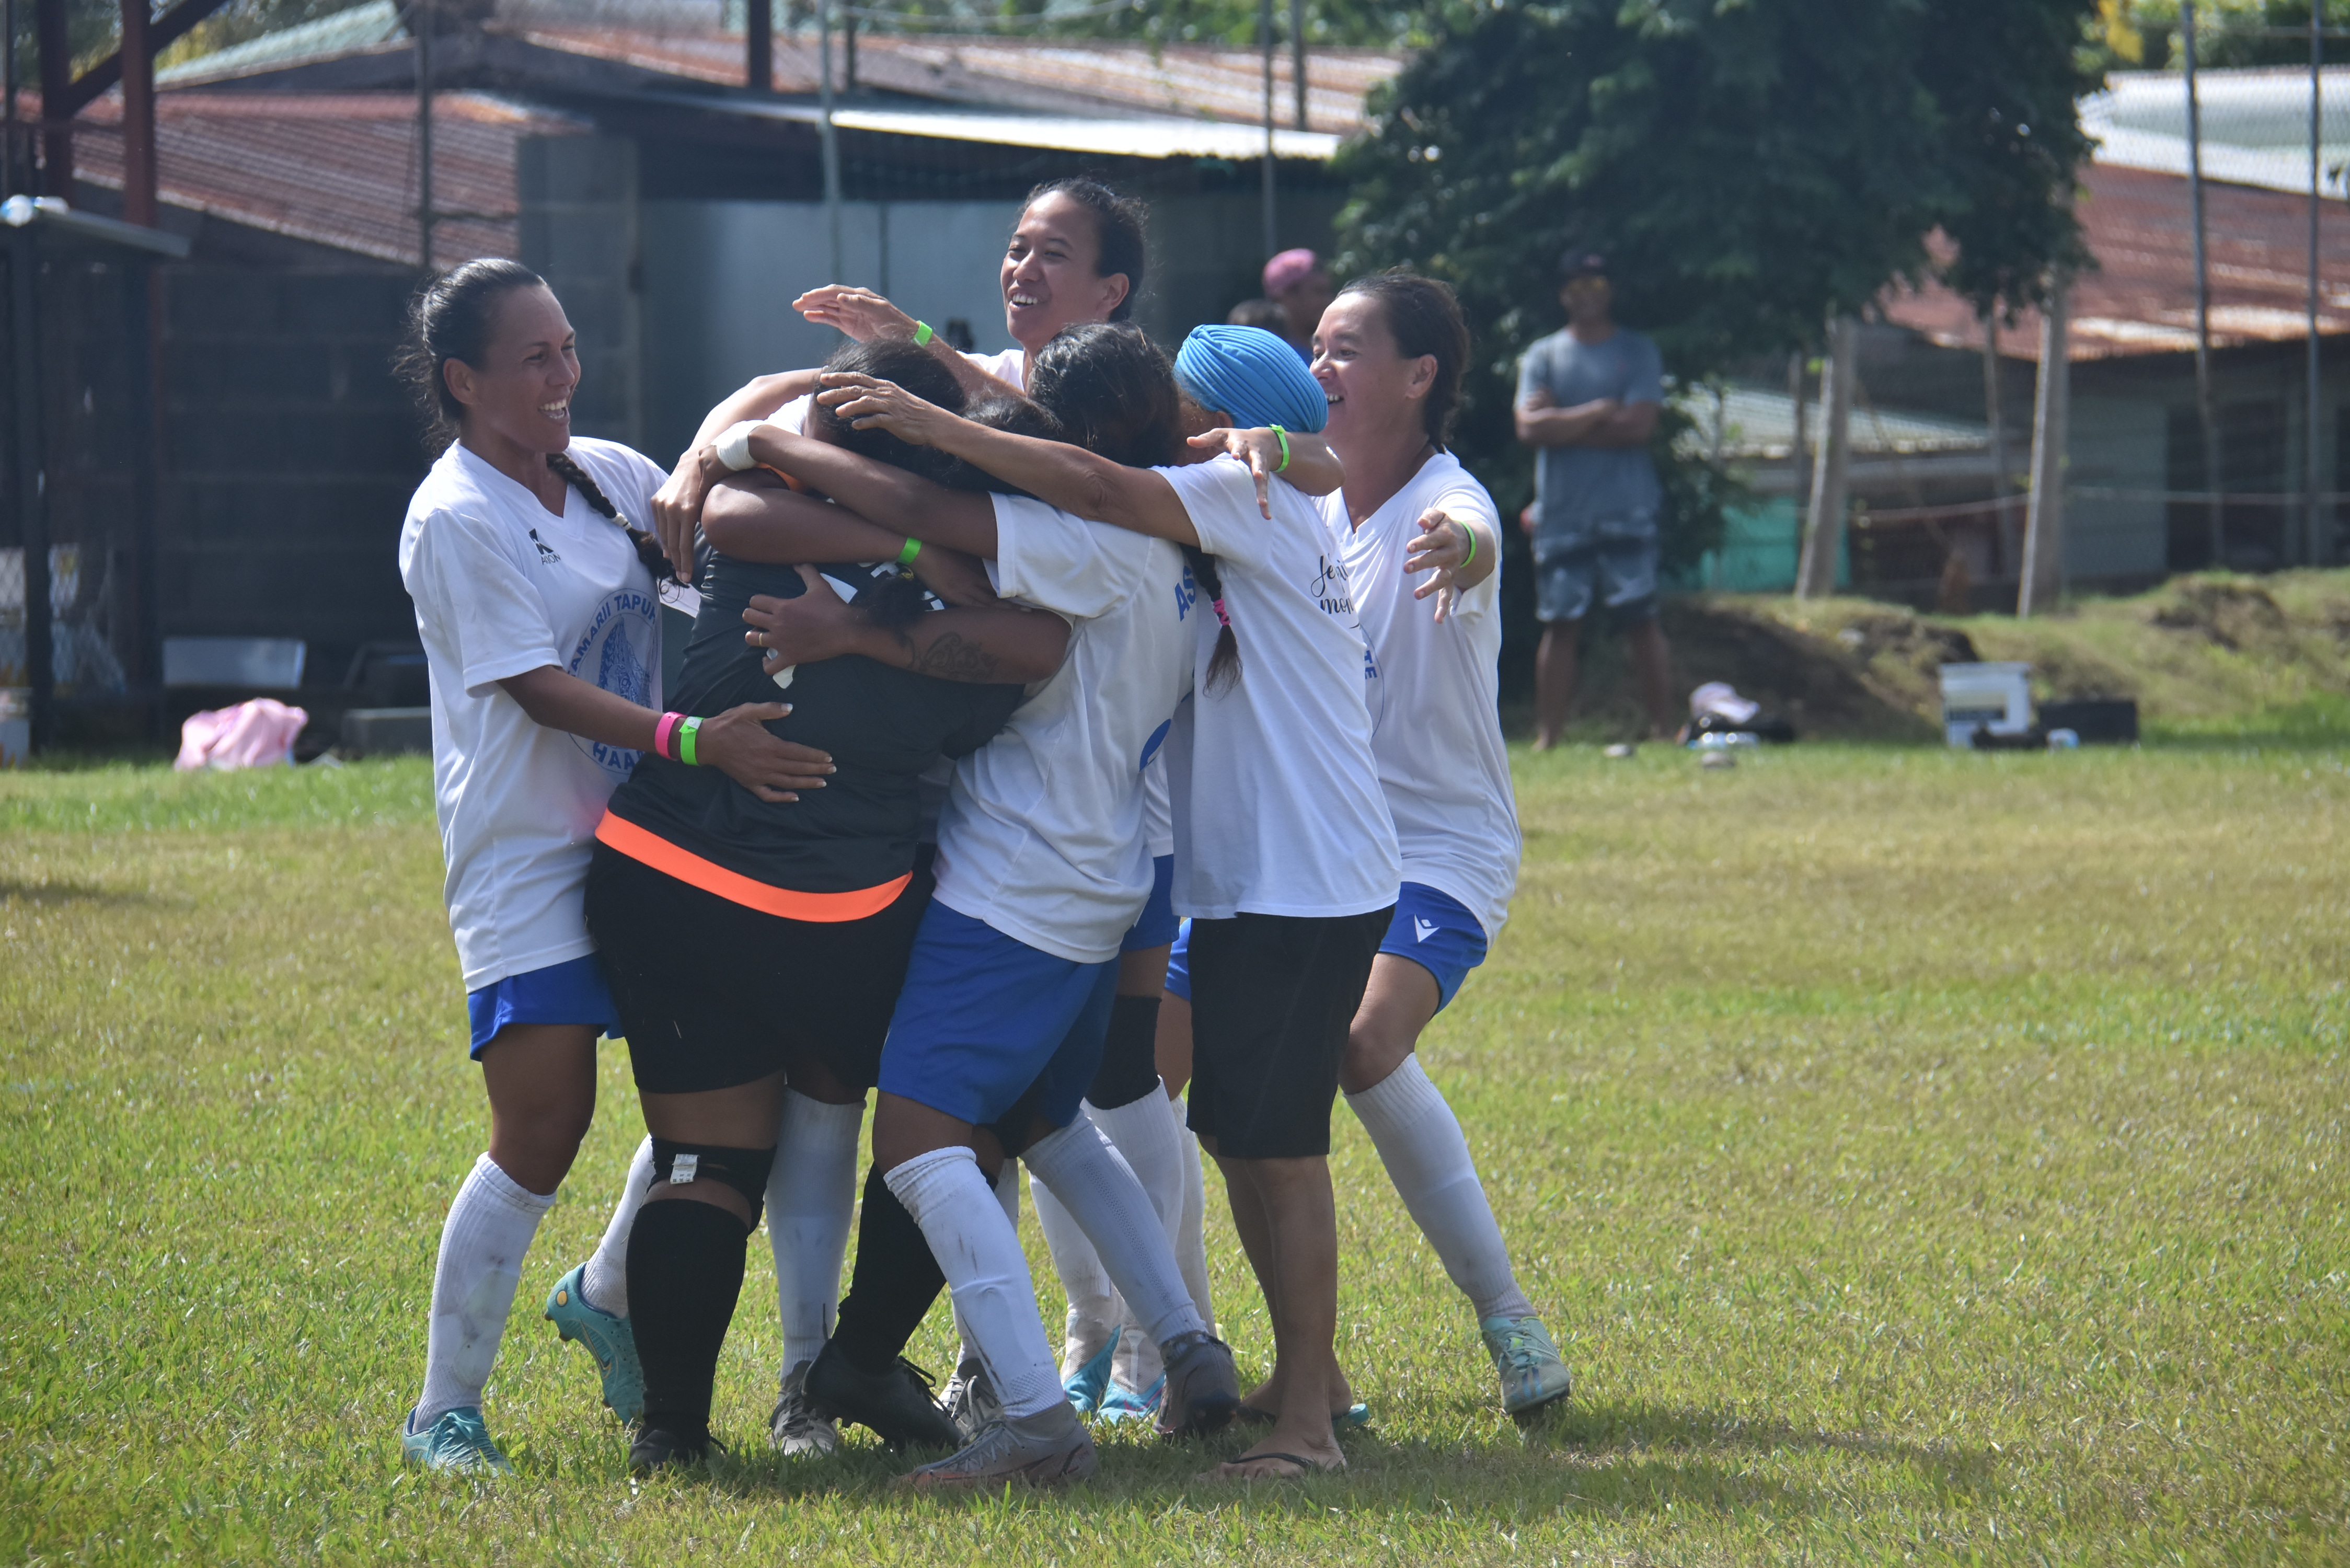 Les joueuses de l'AS Tapuhute autour de leur gardienne, Papeiti Mataitai Dexter, auteure de l'arrêt décisif lors de la séance de tirs au but face à l'AS Faehiri.